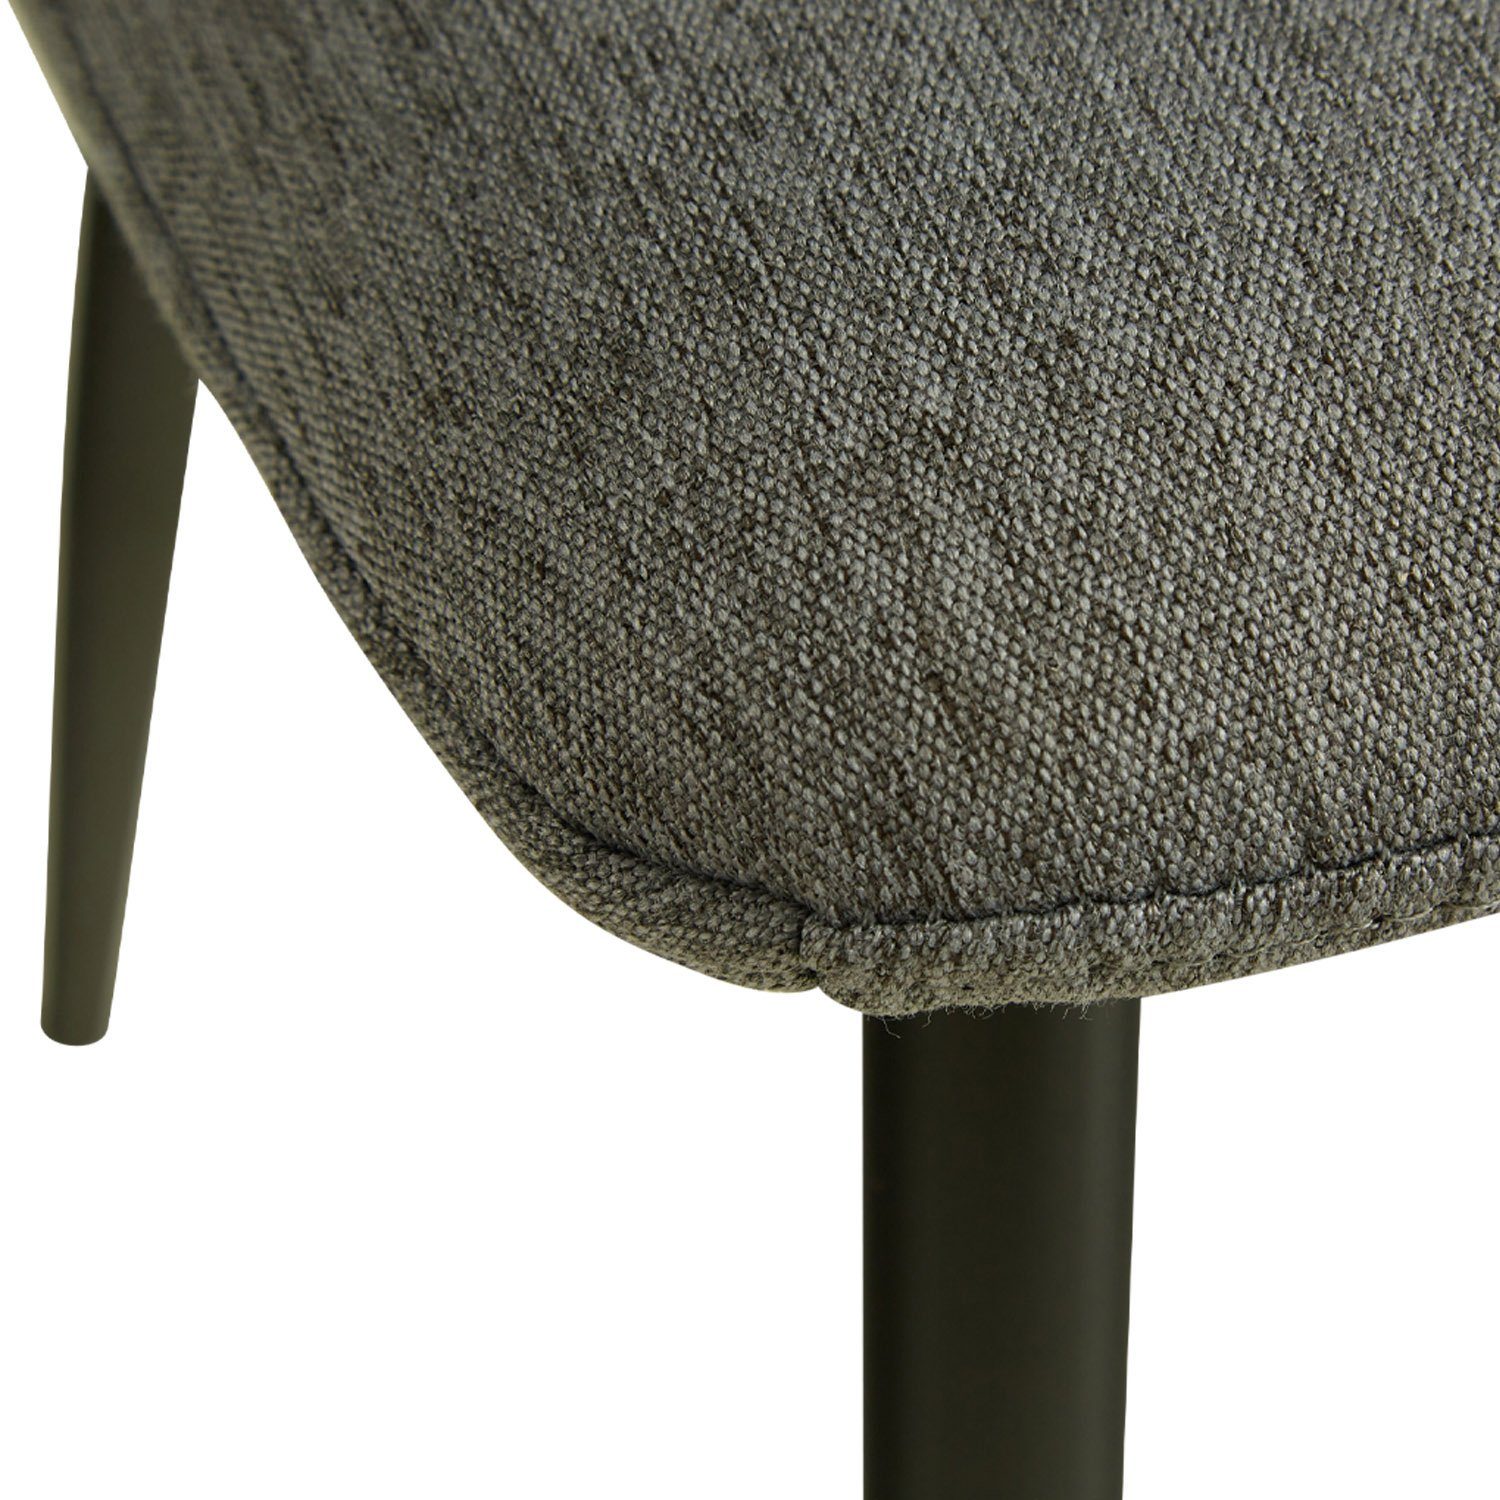 Grau 6 2, (kein Küchenstuhl Homestyle4u Polsterstuhl Esszimmerstuhl schwarz Stühle Set) 1, 4, Stuhl |